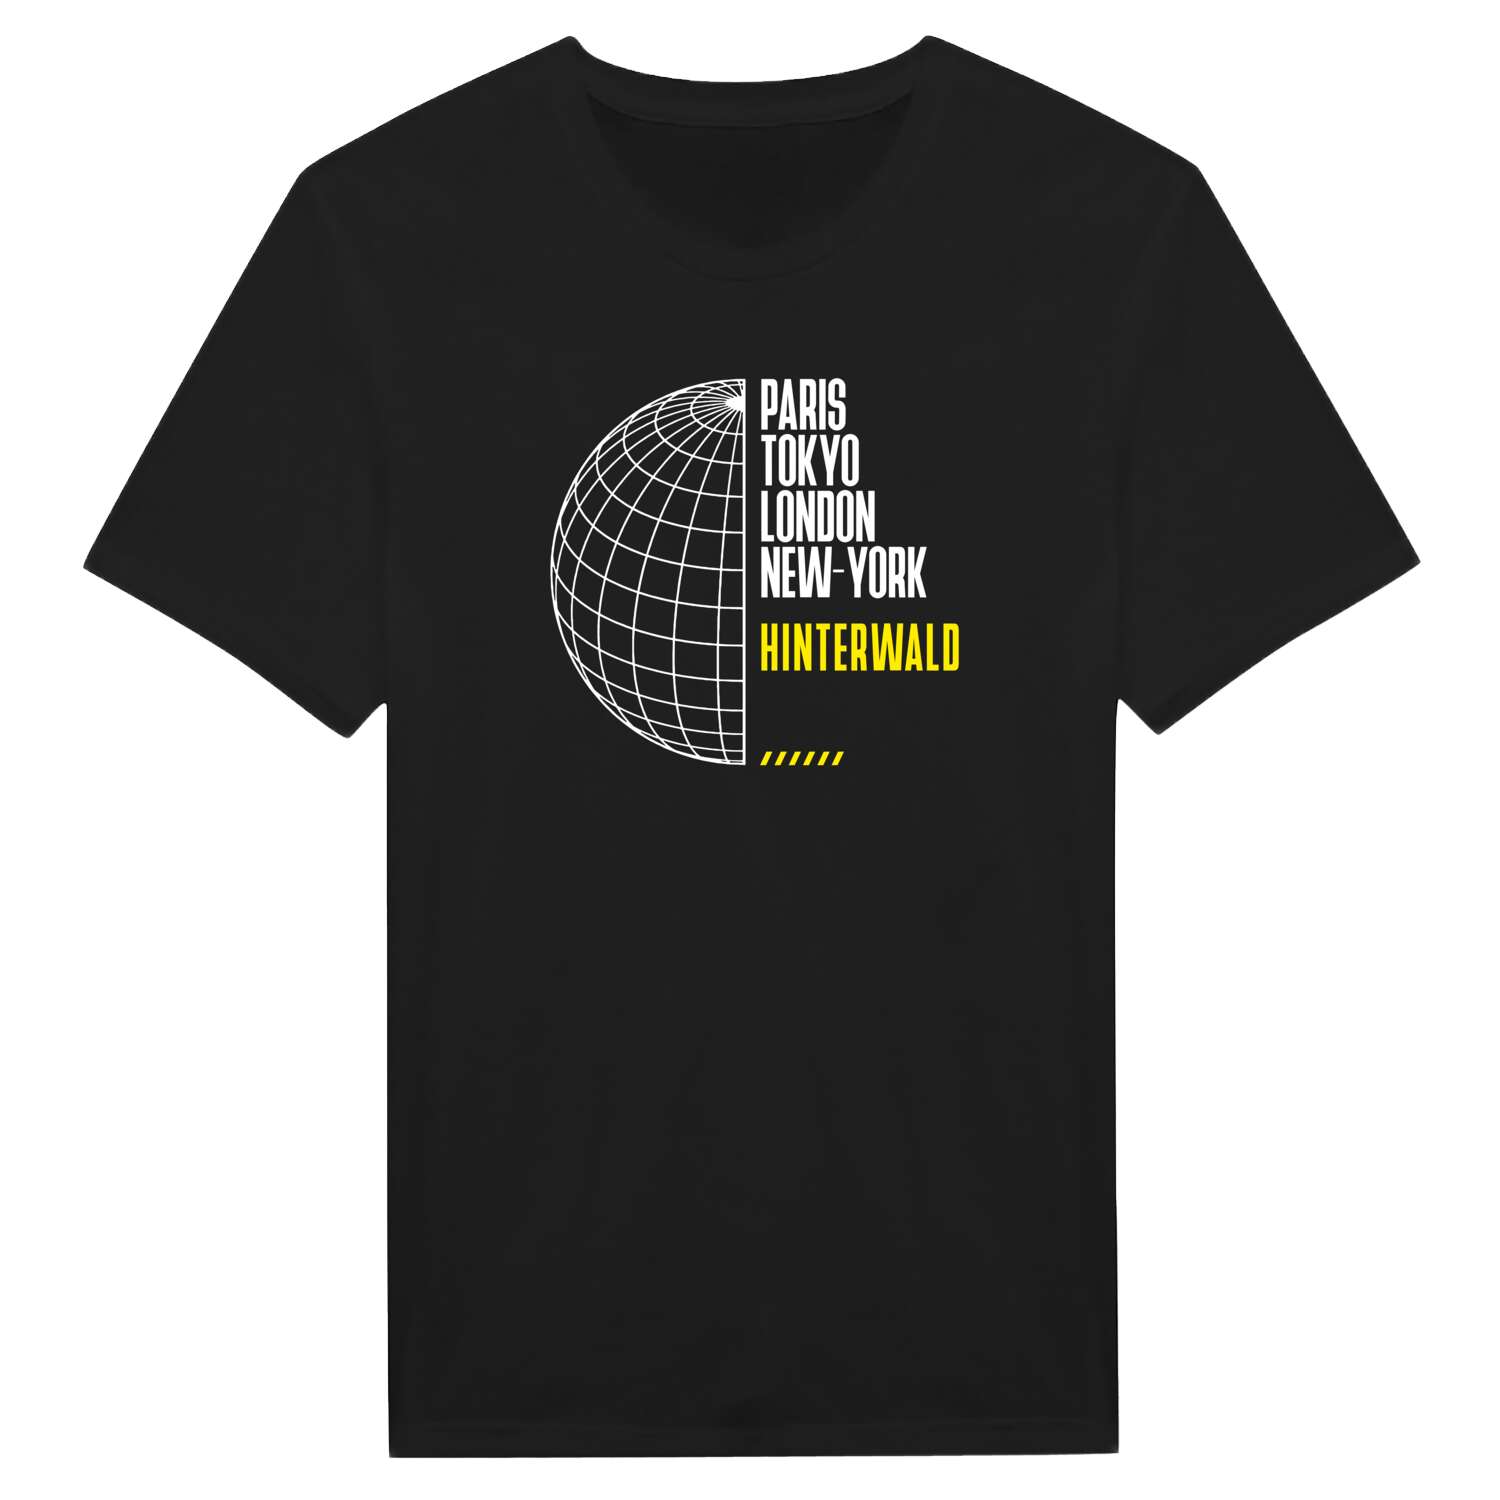 Hinterwald T-Shirt »Paris Tokyo London«